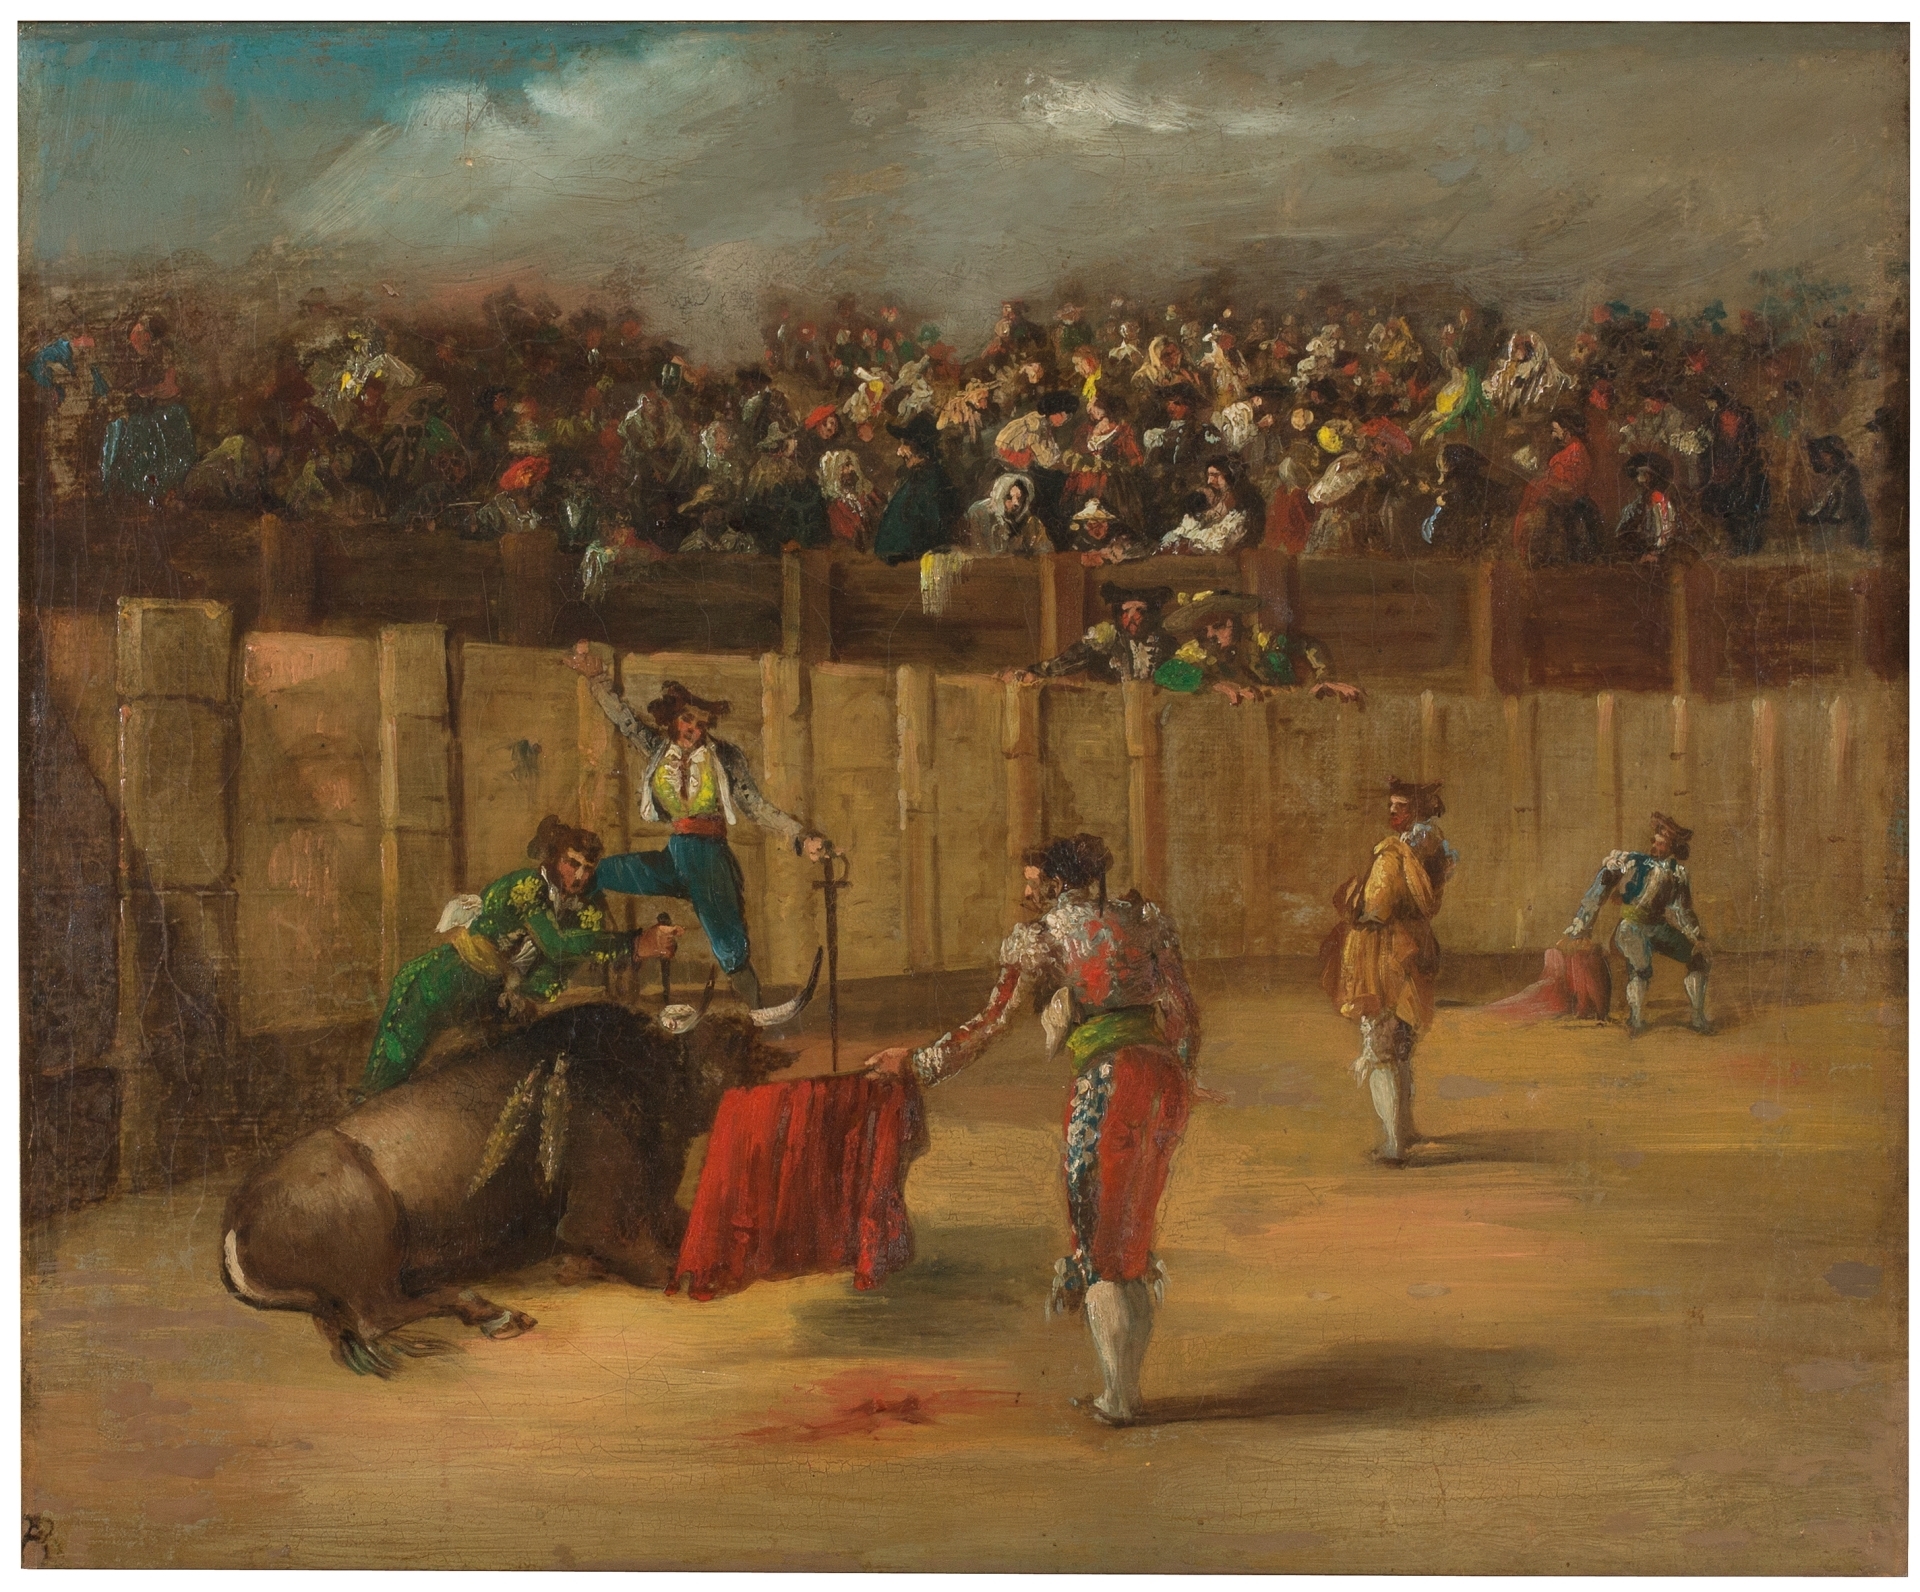 Resultado de imagen de corrida de toros anonimo museo prado